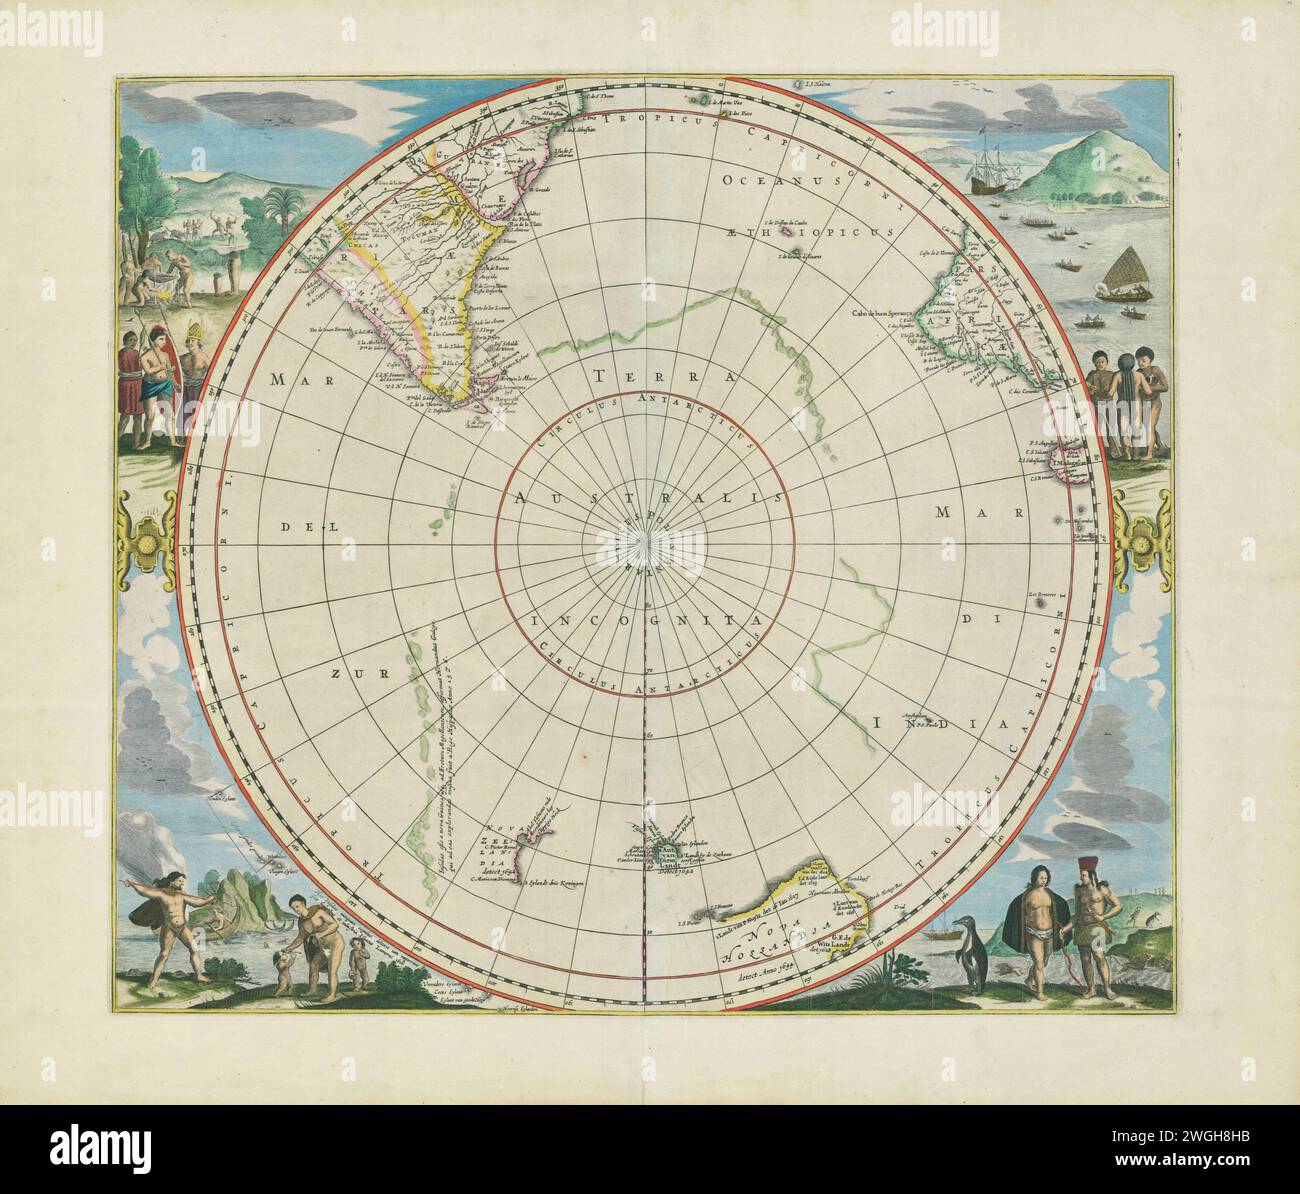 Eine alte illustrierte atlas-Kartenseite zeigt die Antarktis. Veröffentlicht von Johannes Janssonius (auch Jansson genannt), produziert circa. 1650. Stockfoto